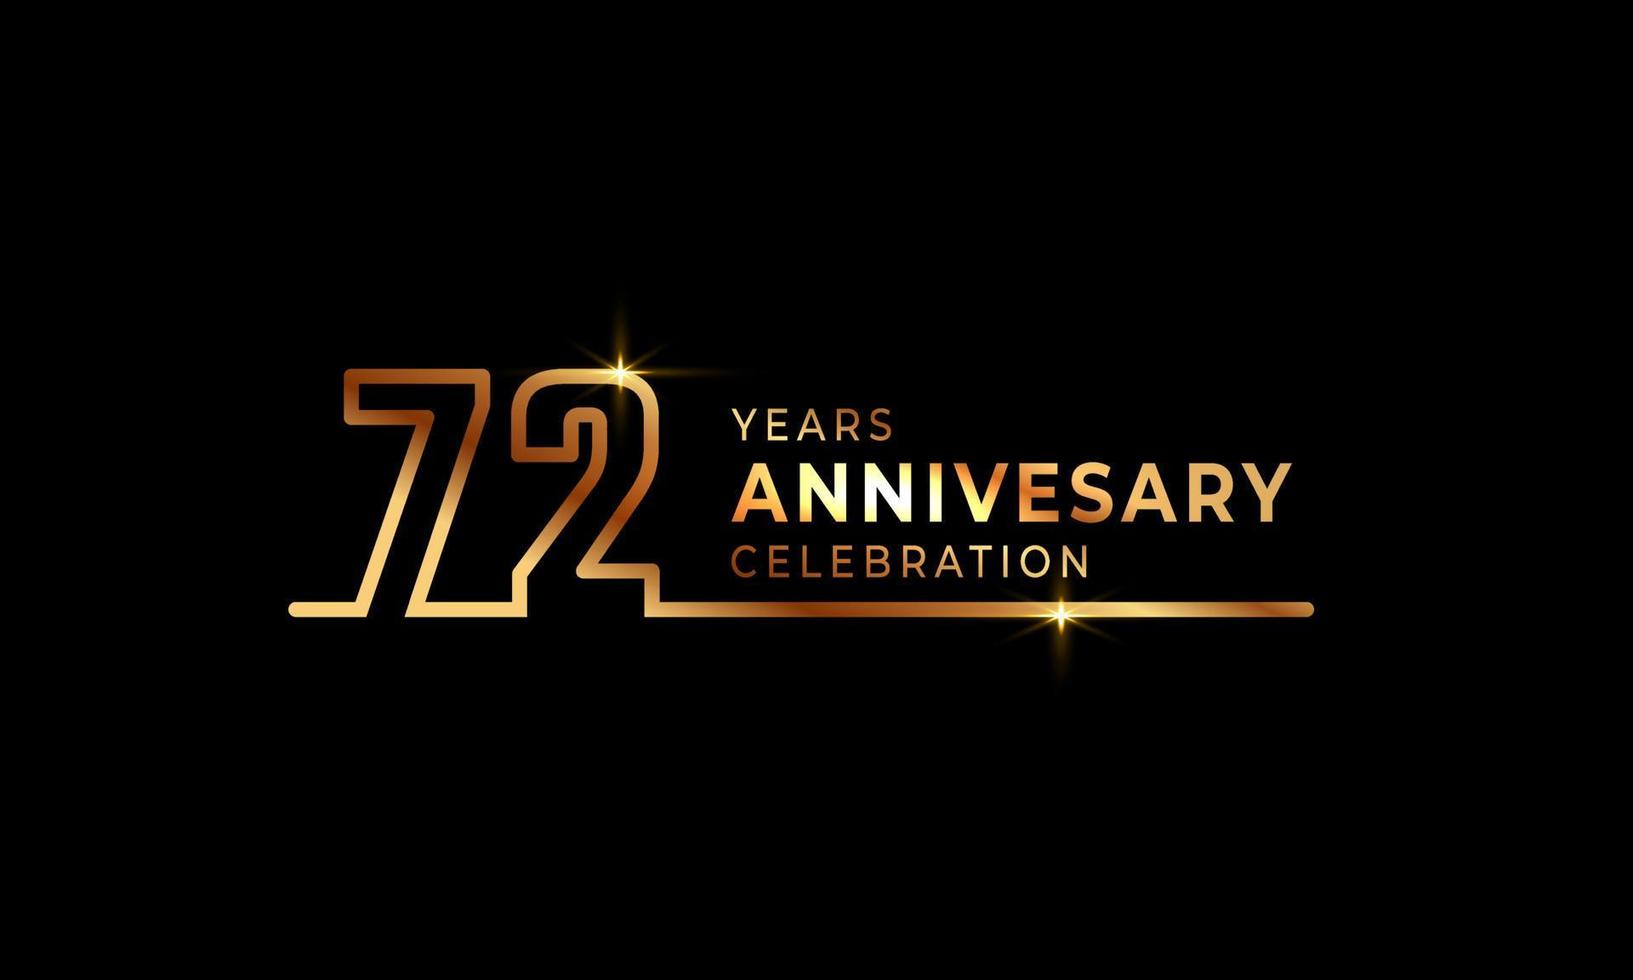 72-jarig jubileumviering logo met gouden gekleurde lettertypenummers gemaakt van één verbonden lijn voor feestgebeurtenis, bruiloft, wenskaart en uitnodiging geïsoleerd op donkere achtergrond vector